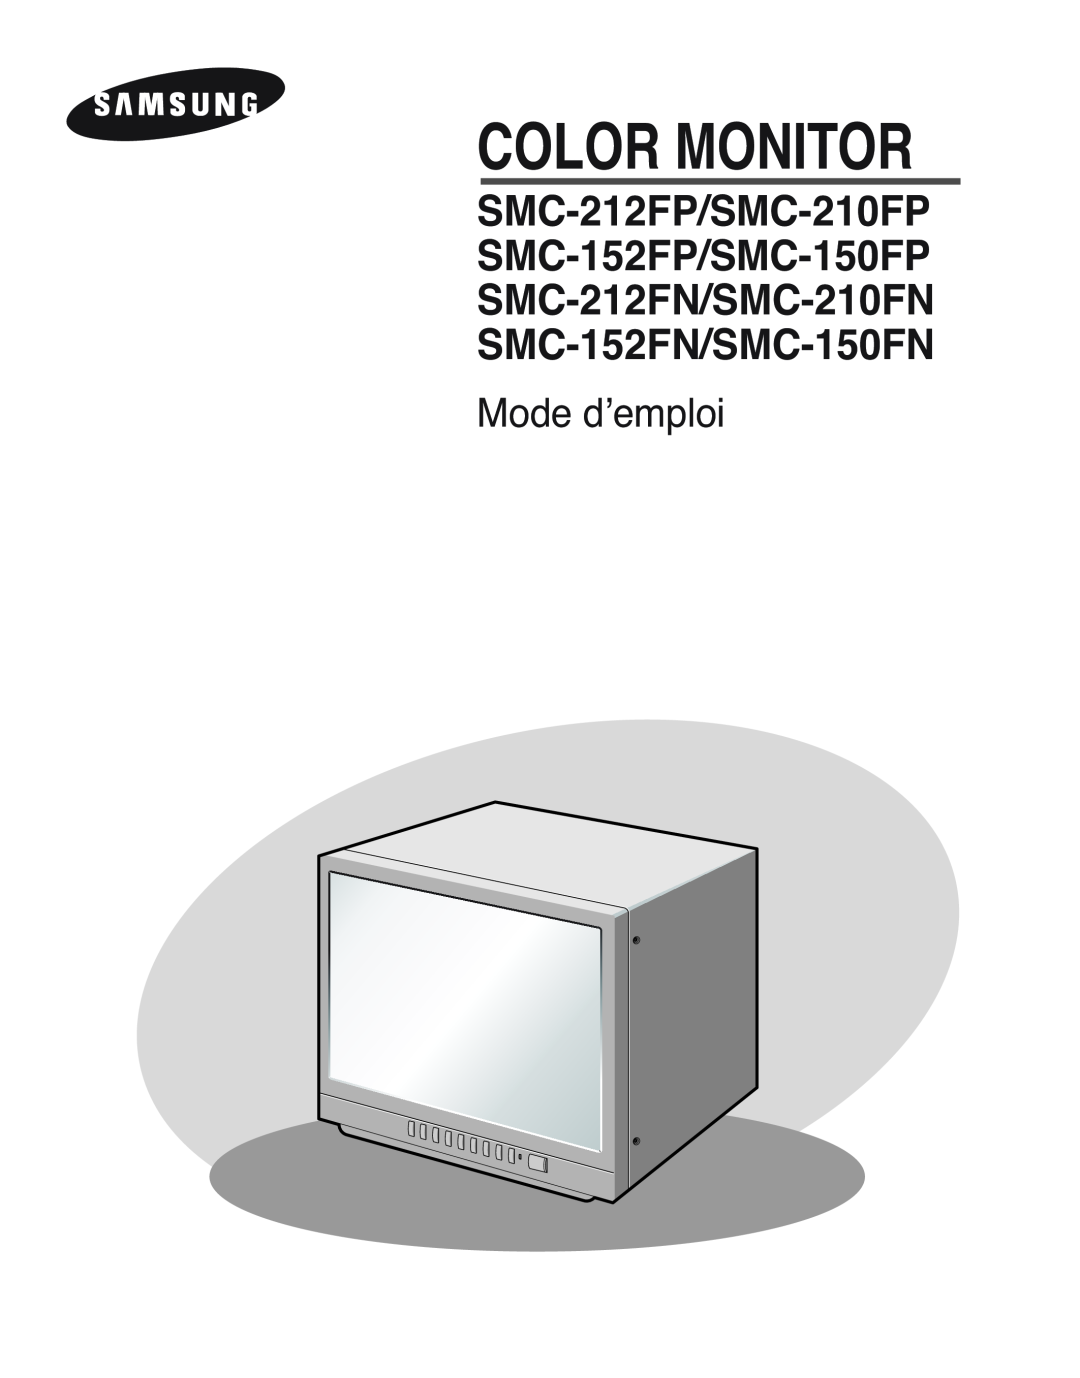 Samsung SMC-212FP, SMC-150FP, SMC-152FPV, SMC-210FPV manual Mode d’emploi, Color Monitor 